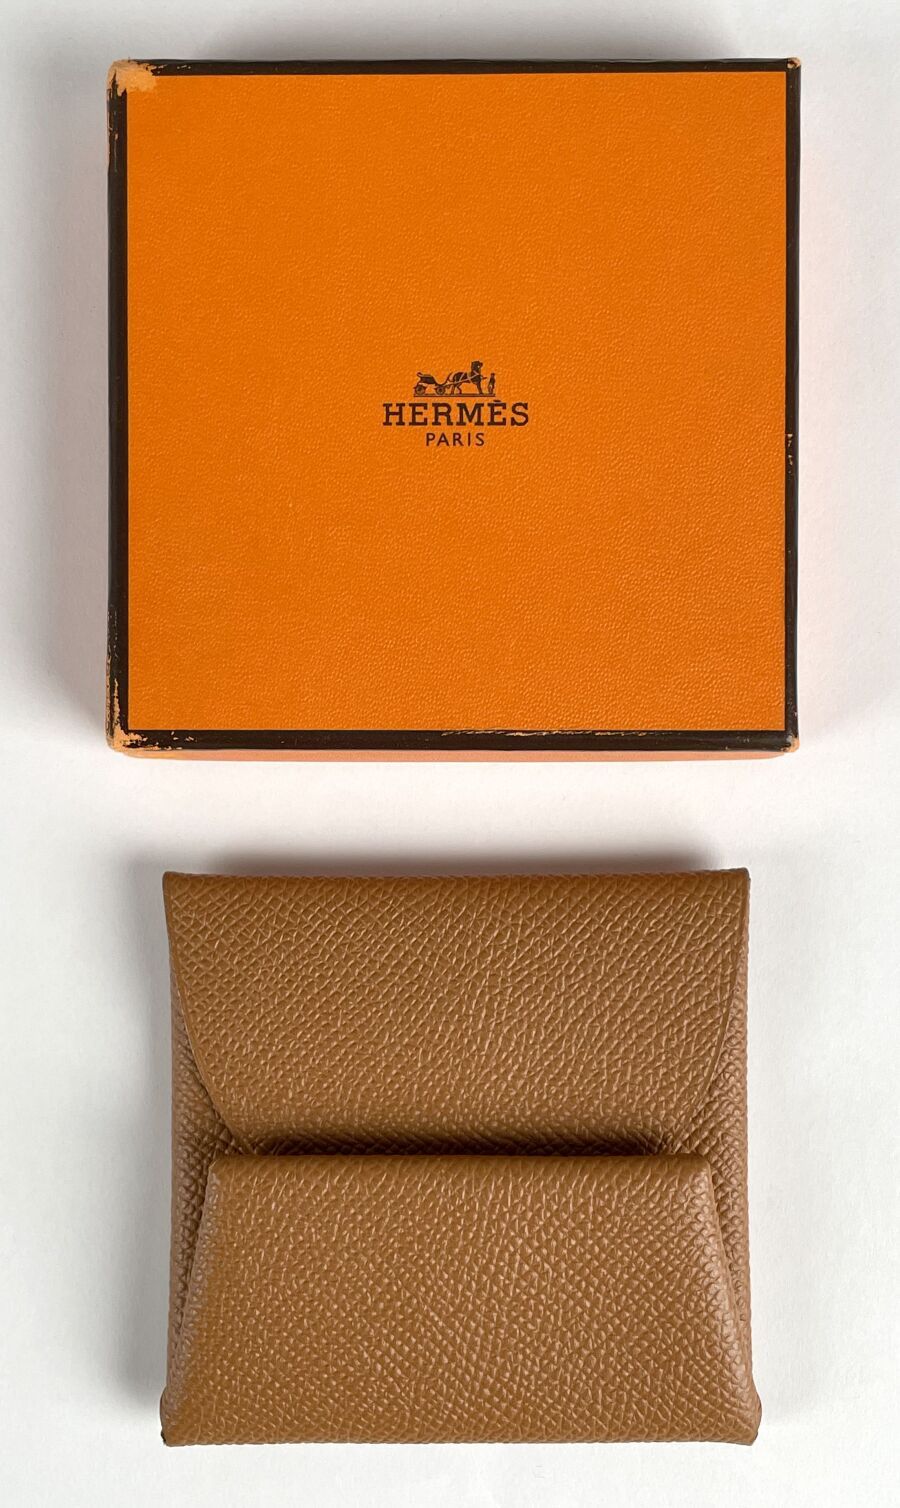 Null 巴黎爱马仕
驼色皮革钱包，按扣式封口。
(新情况。)
在其原包装盒中